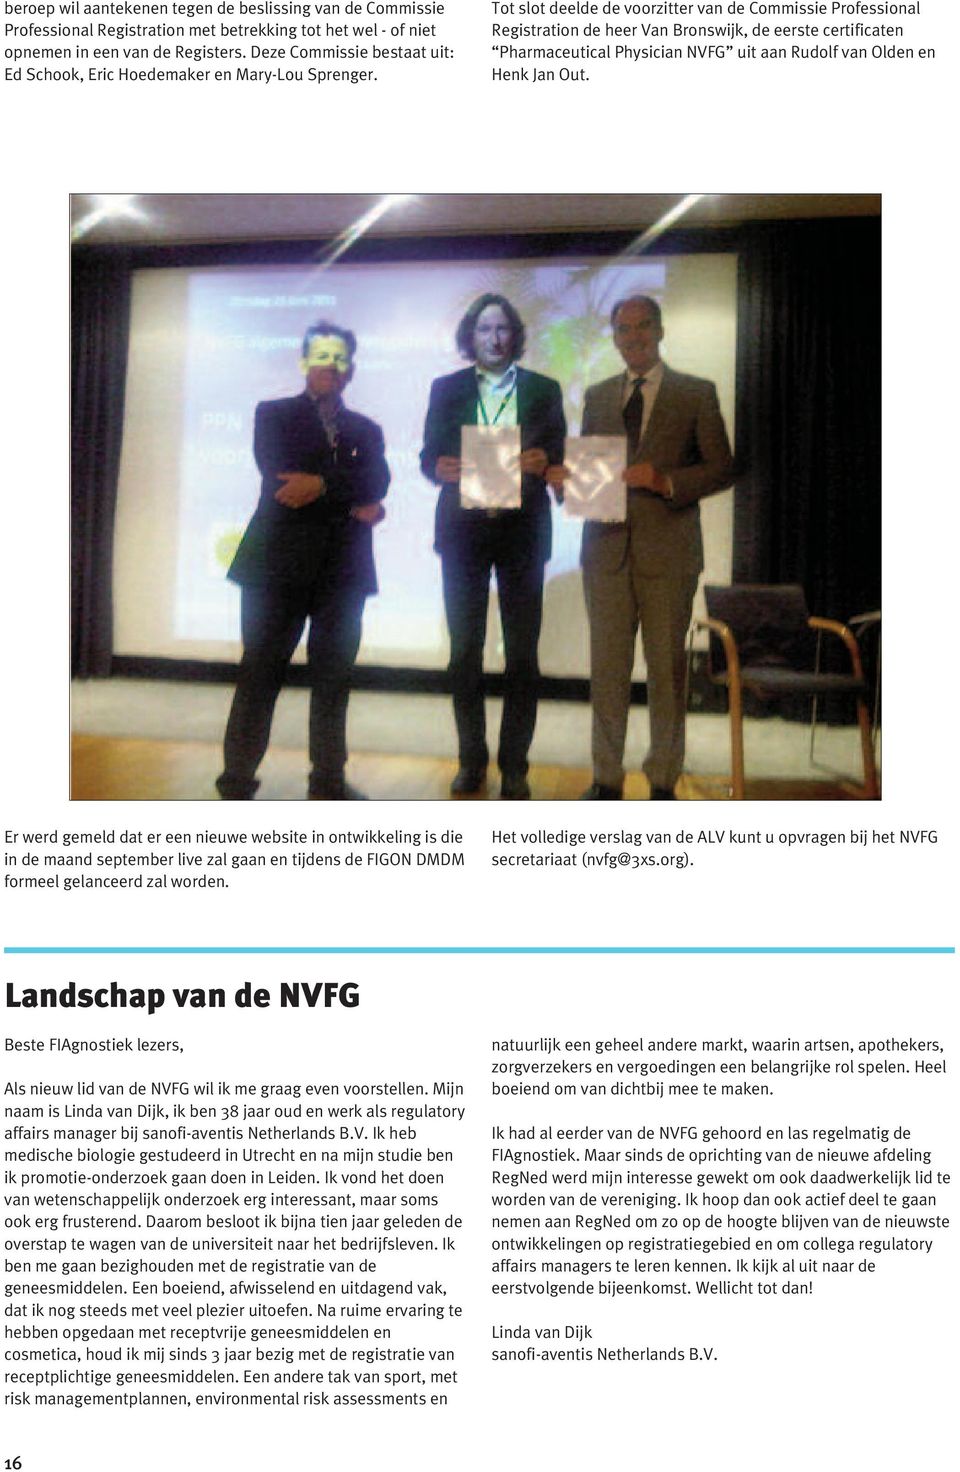 Tot slot deelde de voorzitter van de Commissie Professional Registration de heer Van Bronswijk, de eerste certificaten Pharmaceutical Physician NVFG uit aan Rudolf van Olden en Henk Jan Out.